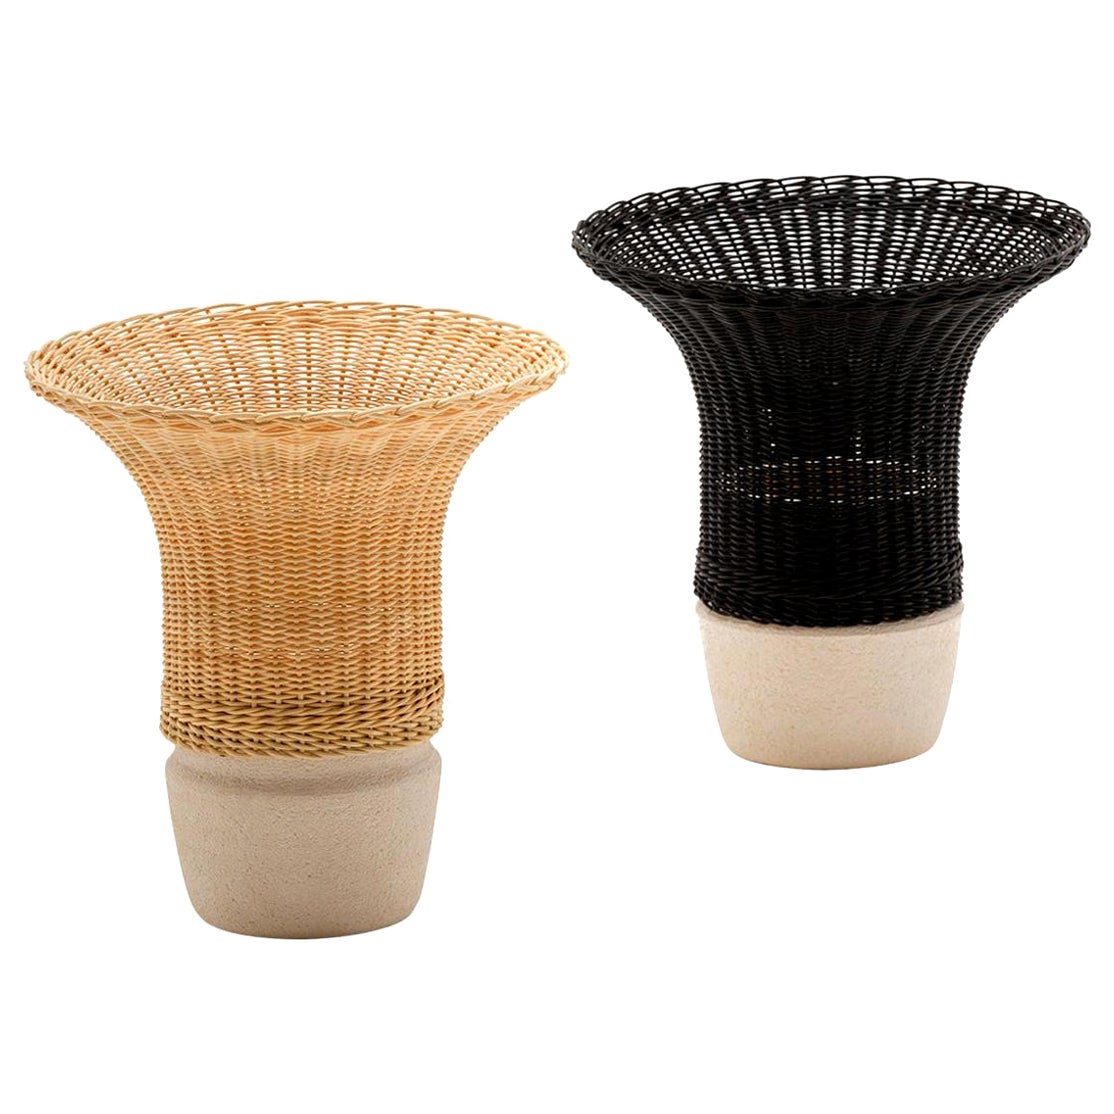 21st Century Nodo Woven Wicker and Ceramic Vase, by Bottega Intreccio